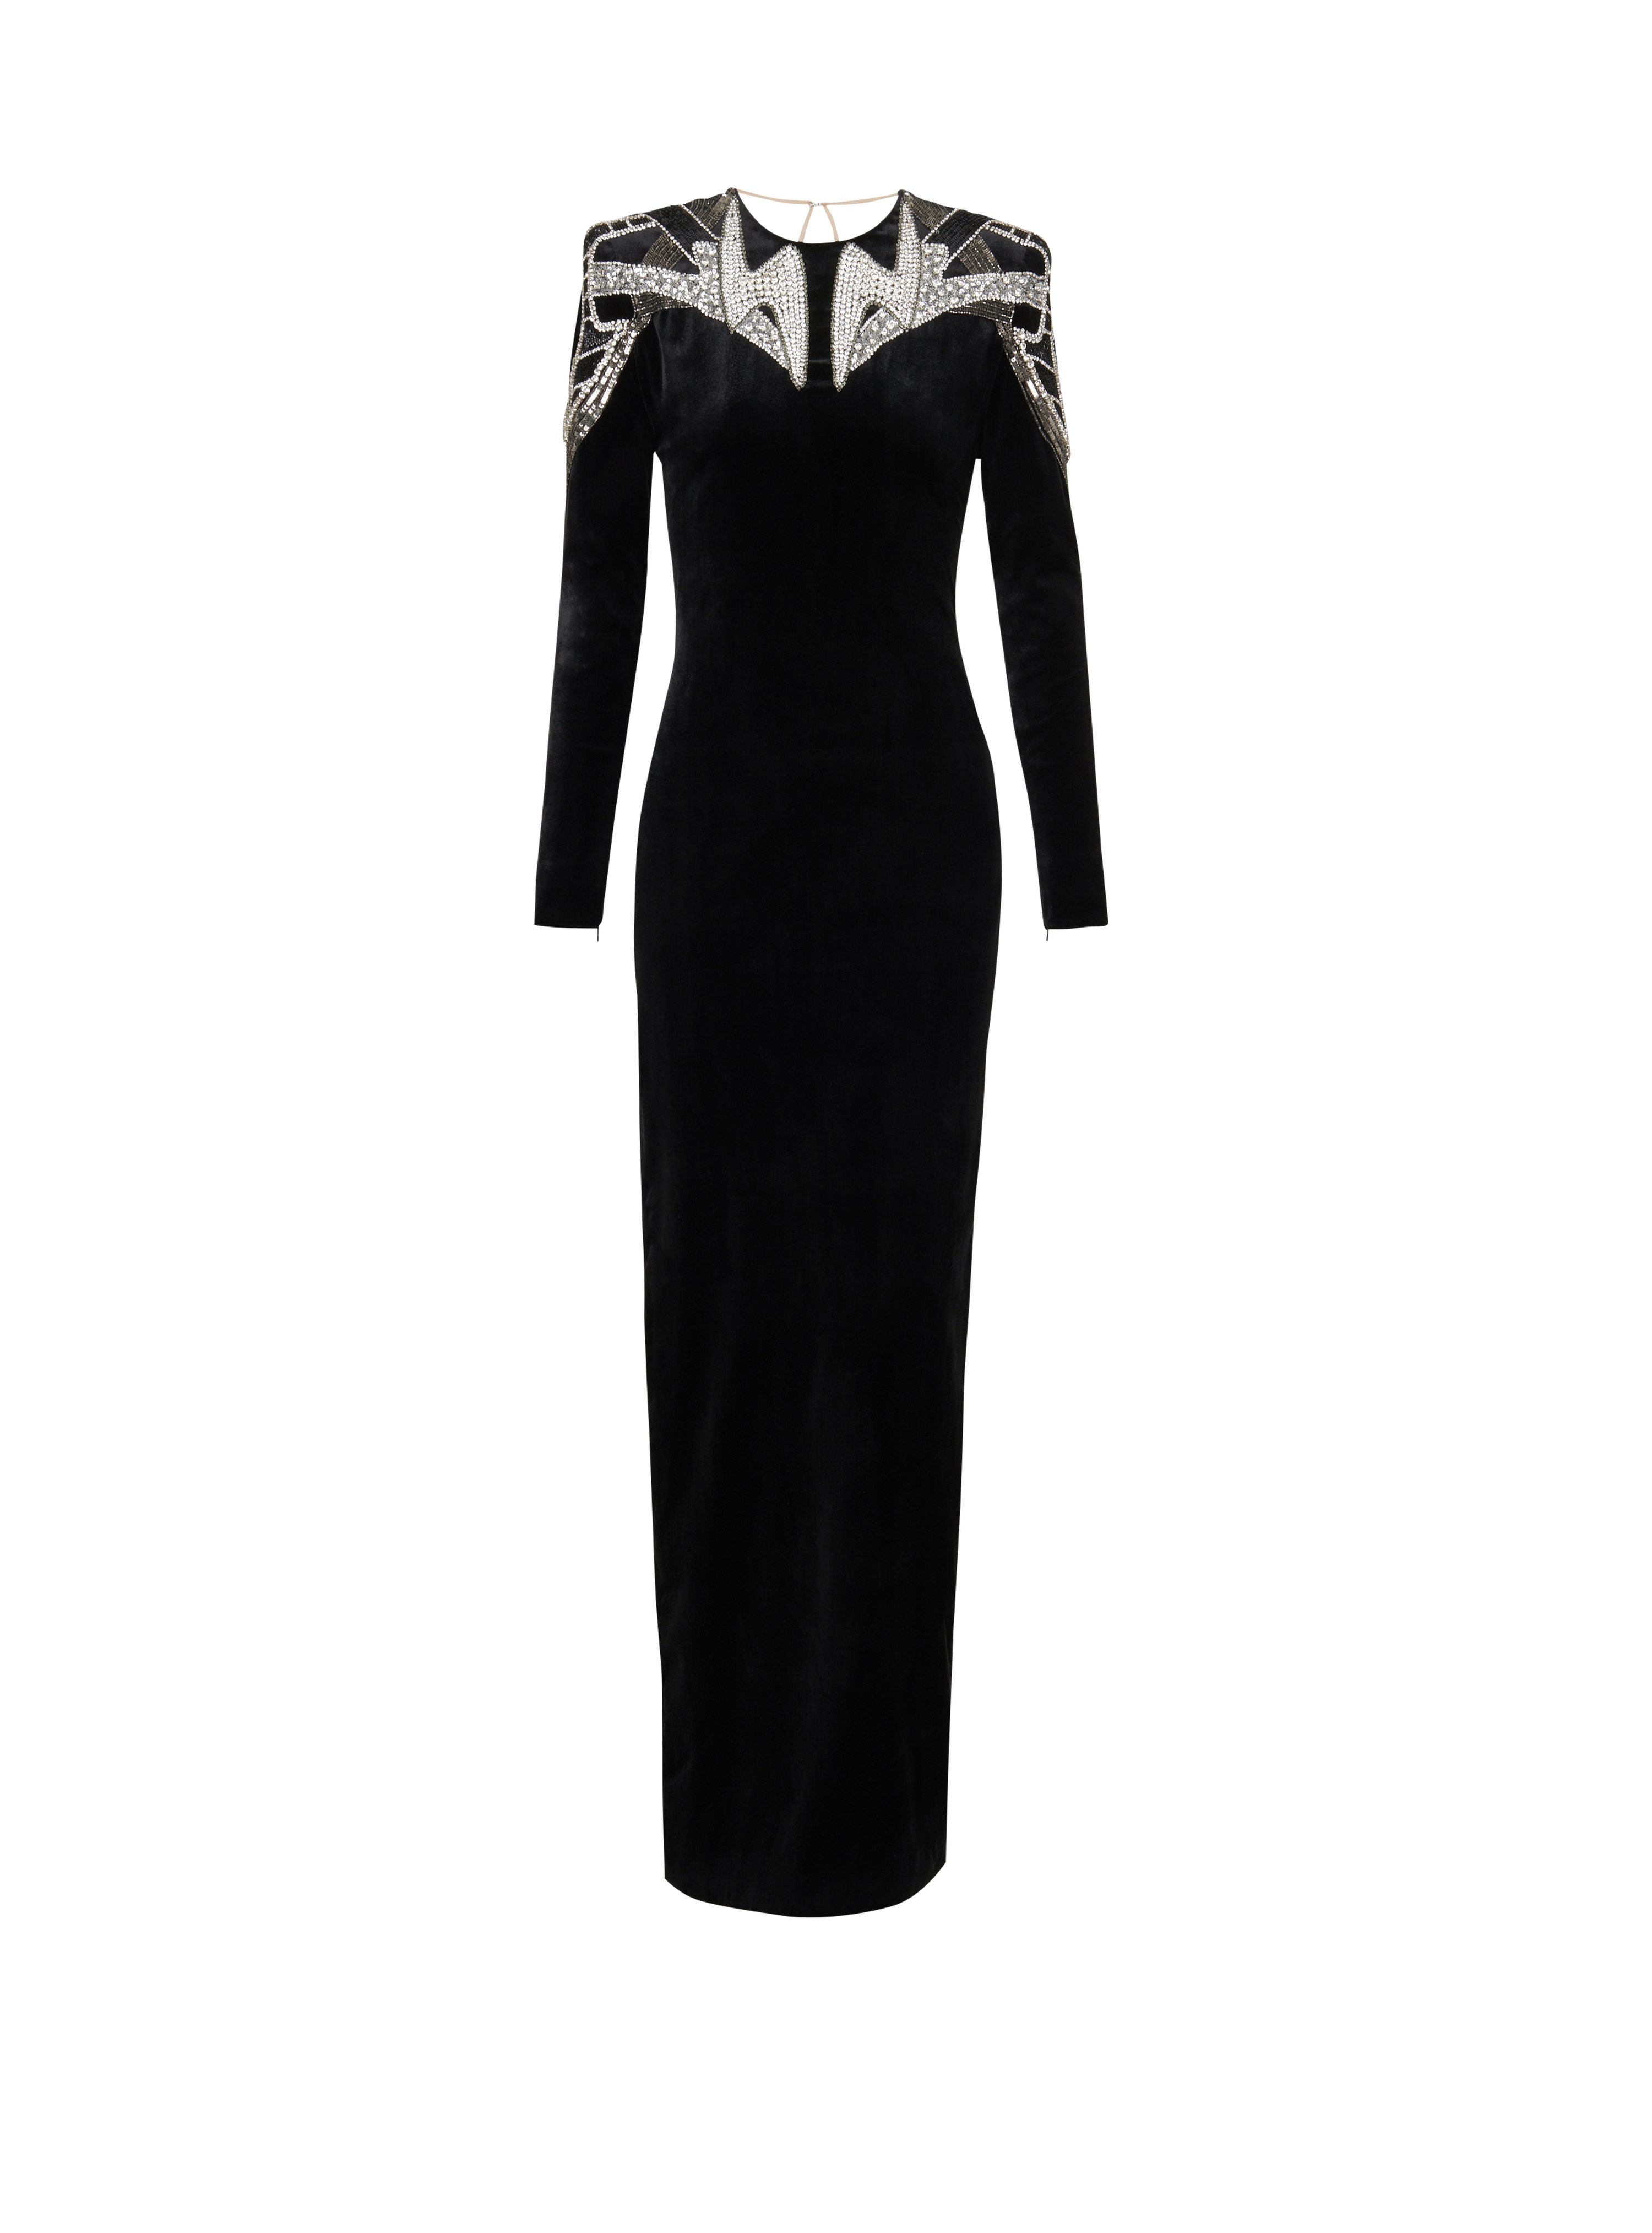 Embroidered velvet dress, black